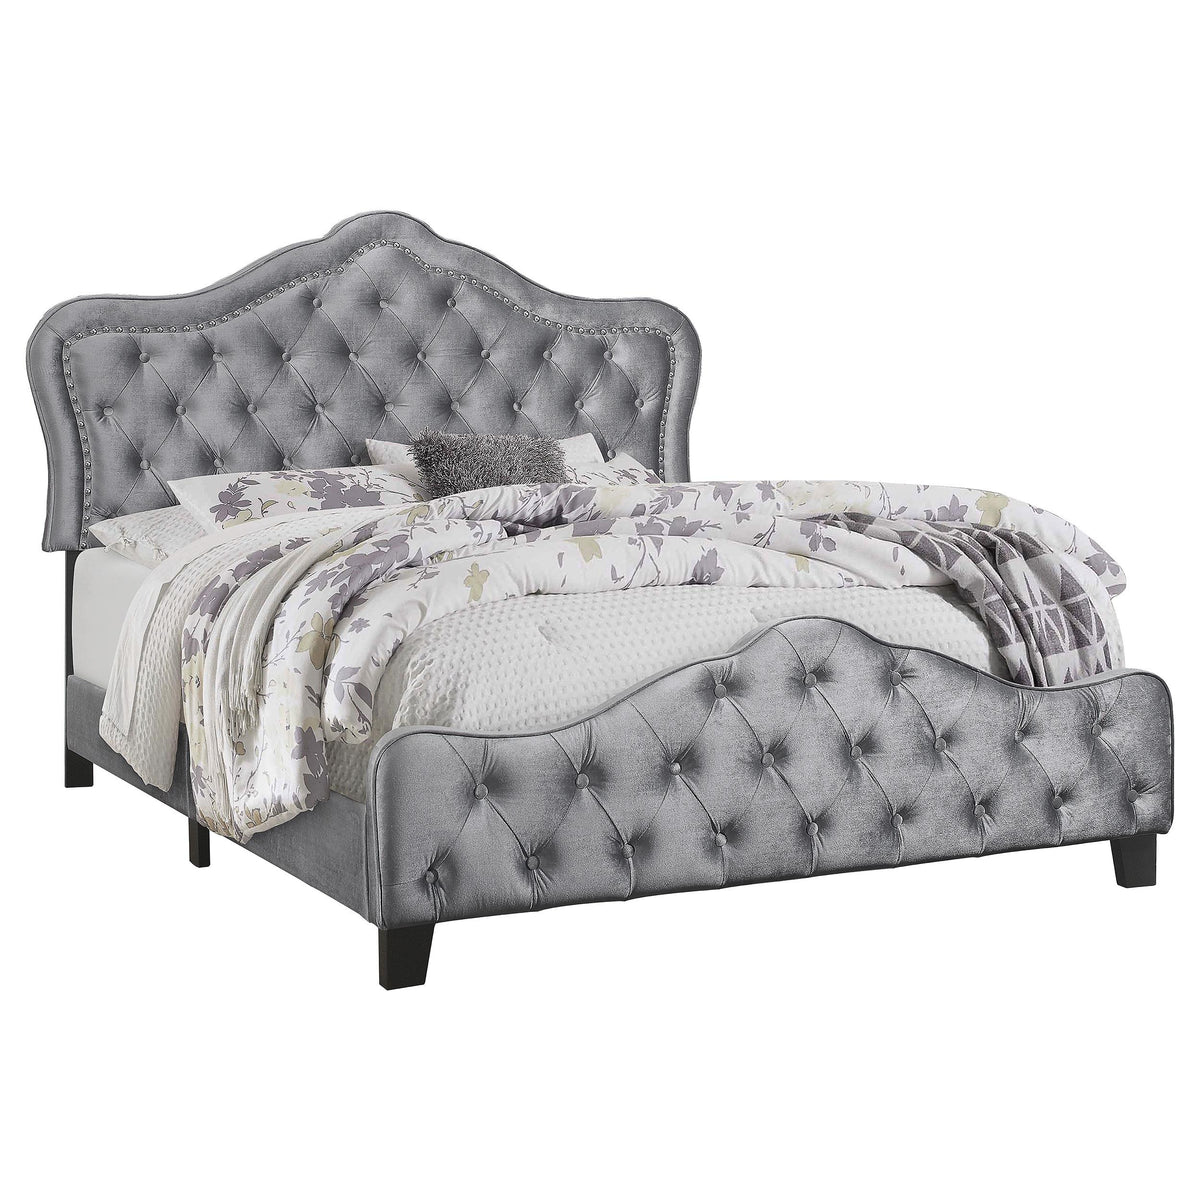 Bella King Upholstered Tufted Panel Bed Grey Bella King Upholstered Tufted Panel Bed Grey Half Price Furniture